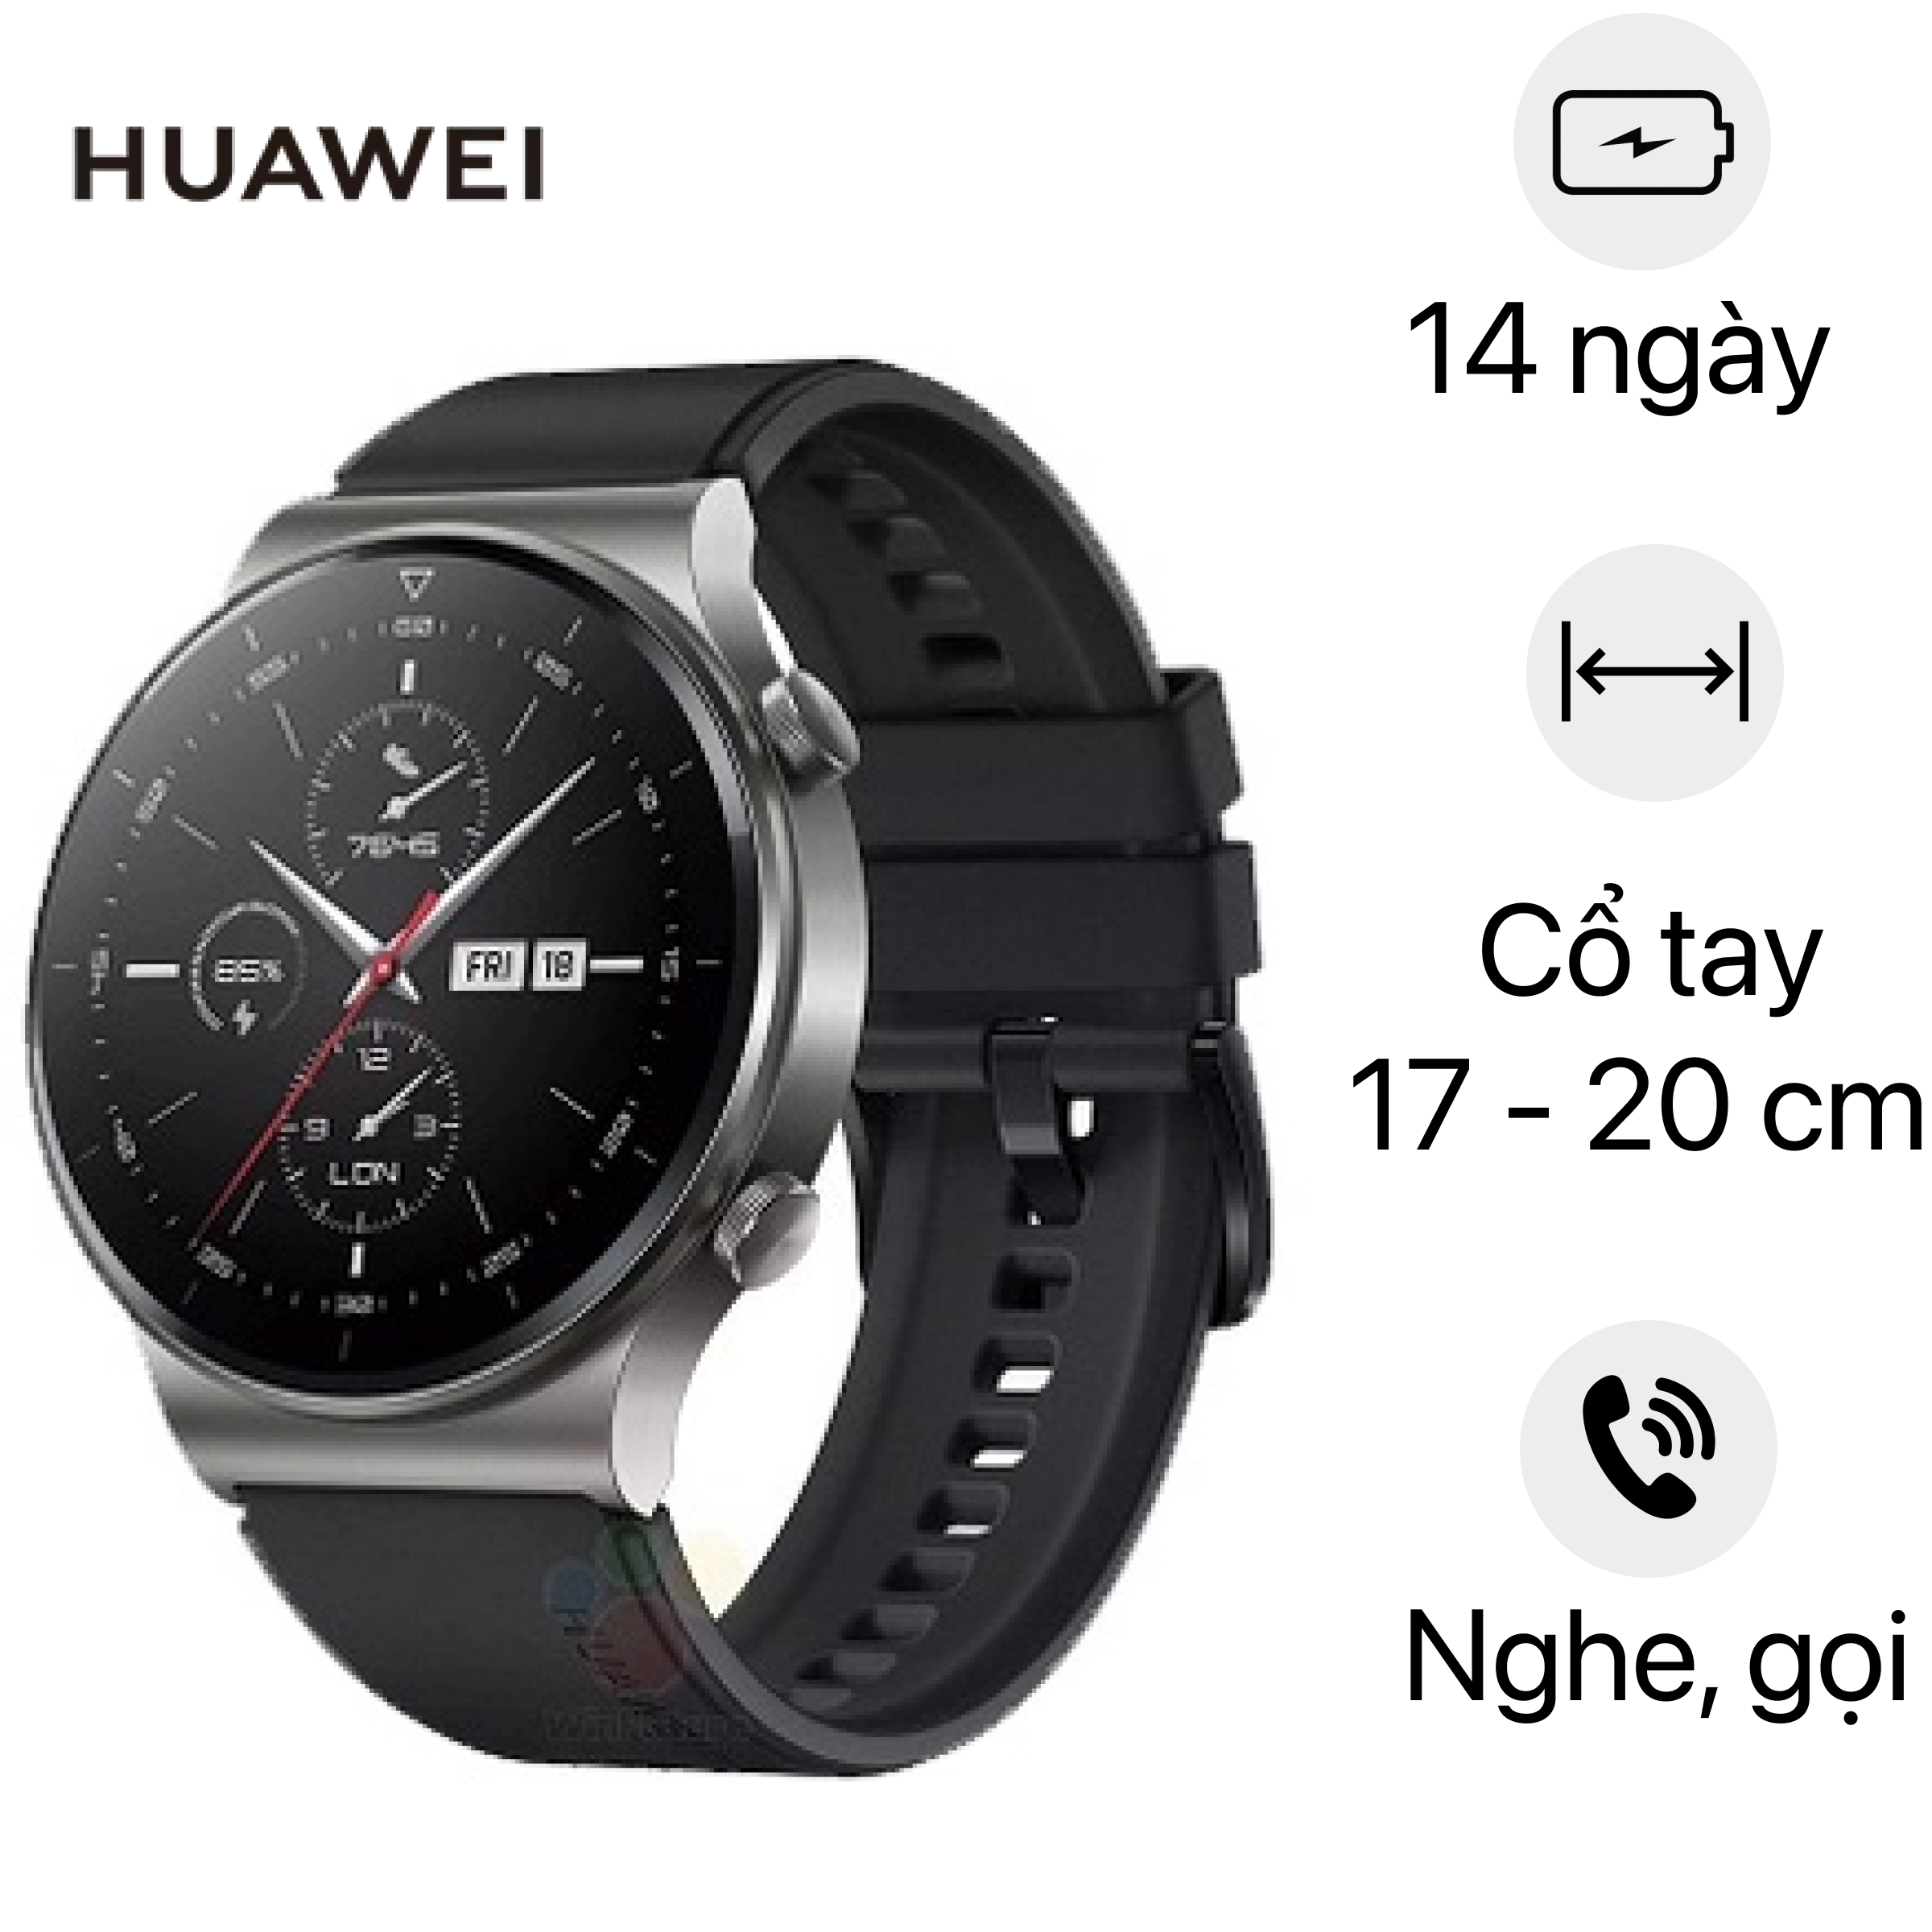 Đồng hồ Huawei Watch GT Pro Giá rẻ, cao cấp, có trả góp